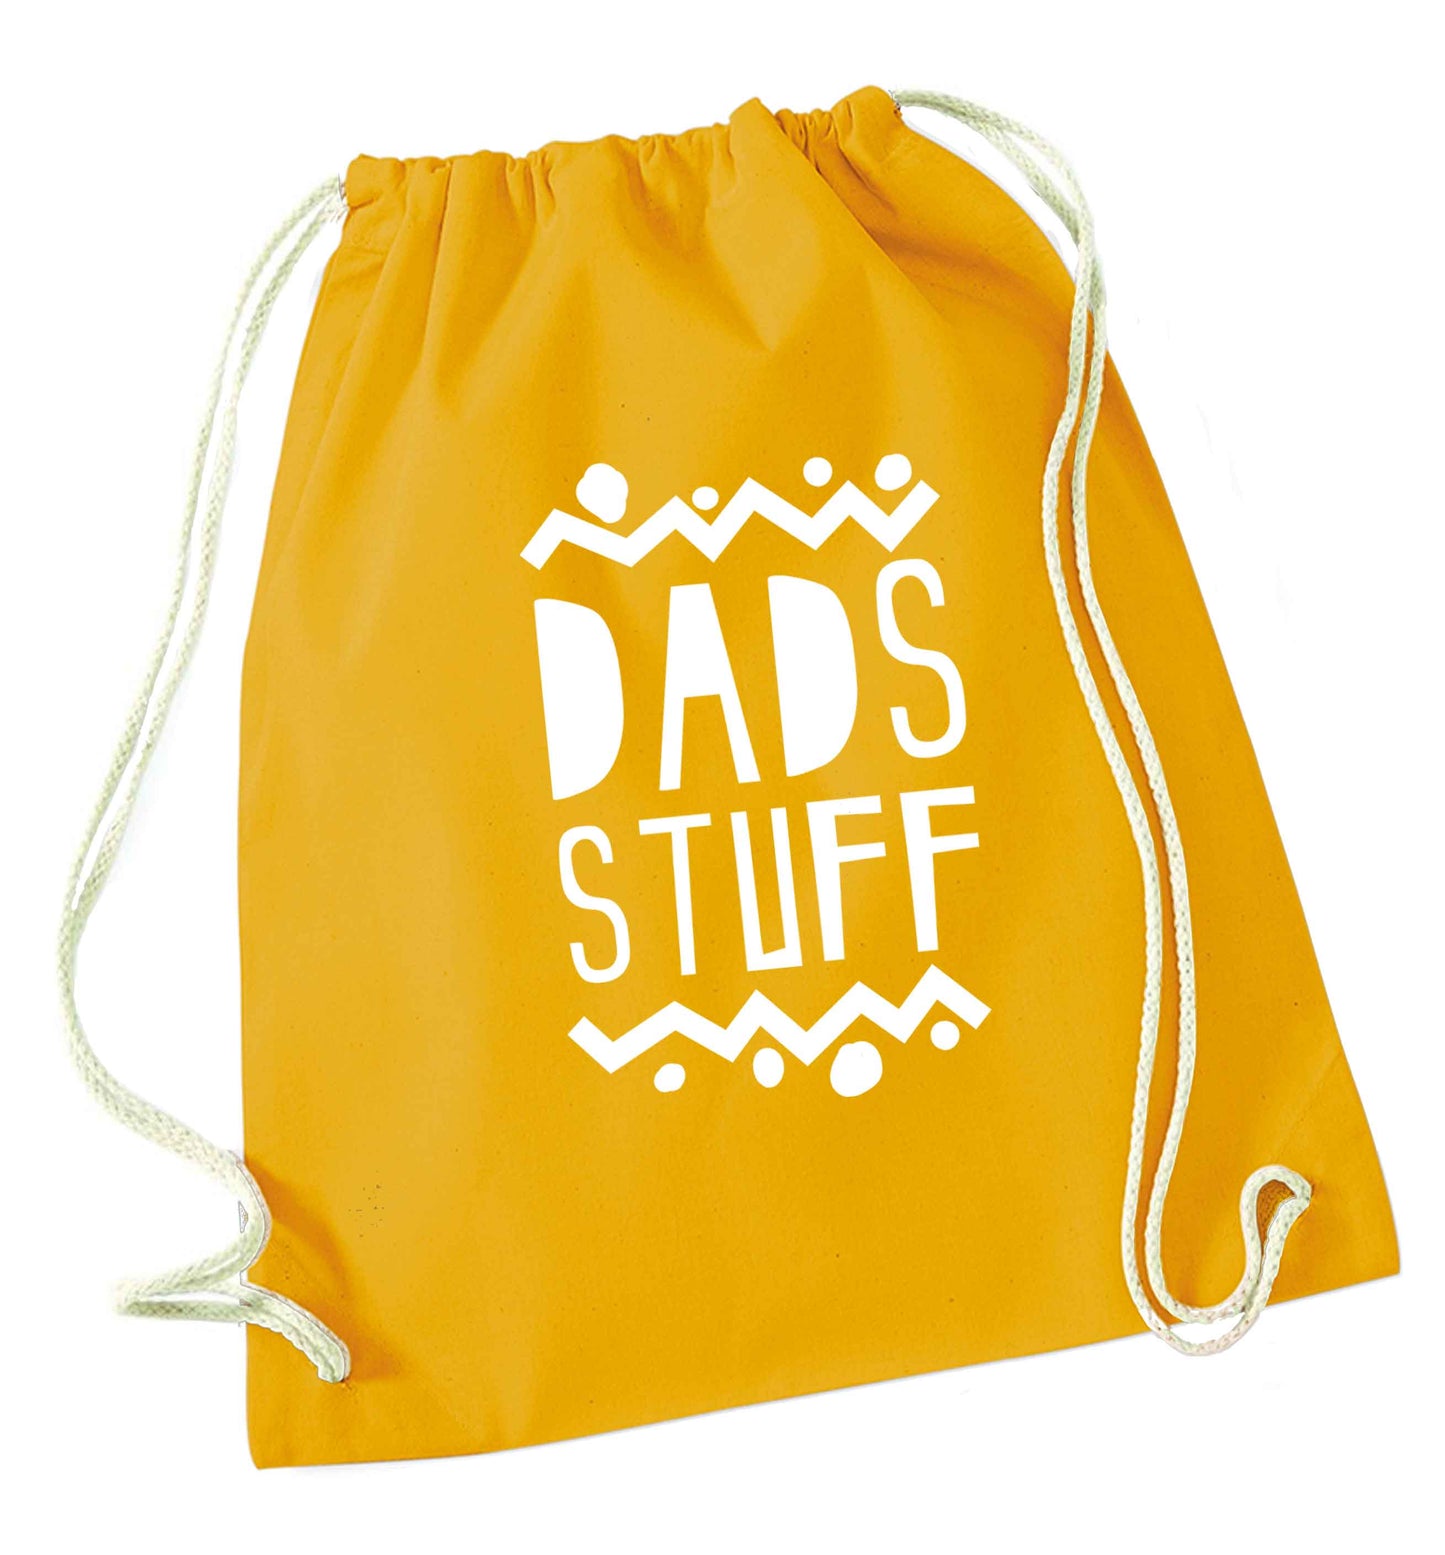 Dads stuff mustard drawstring bag